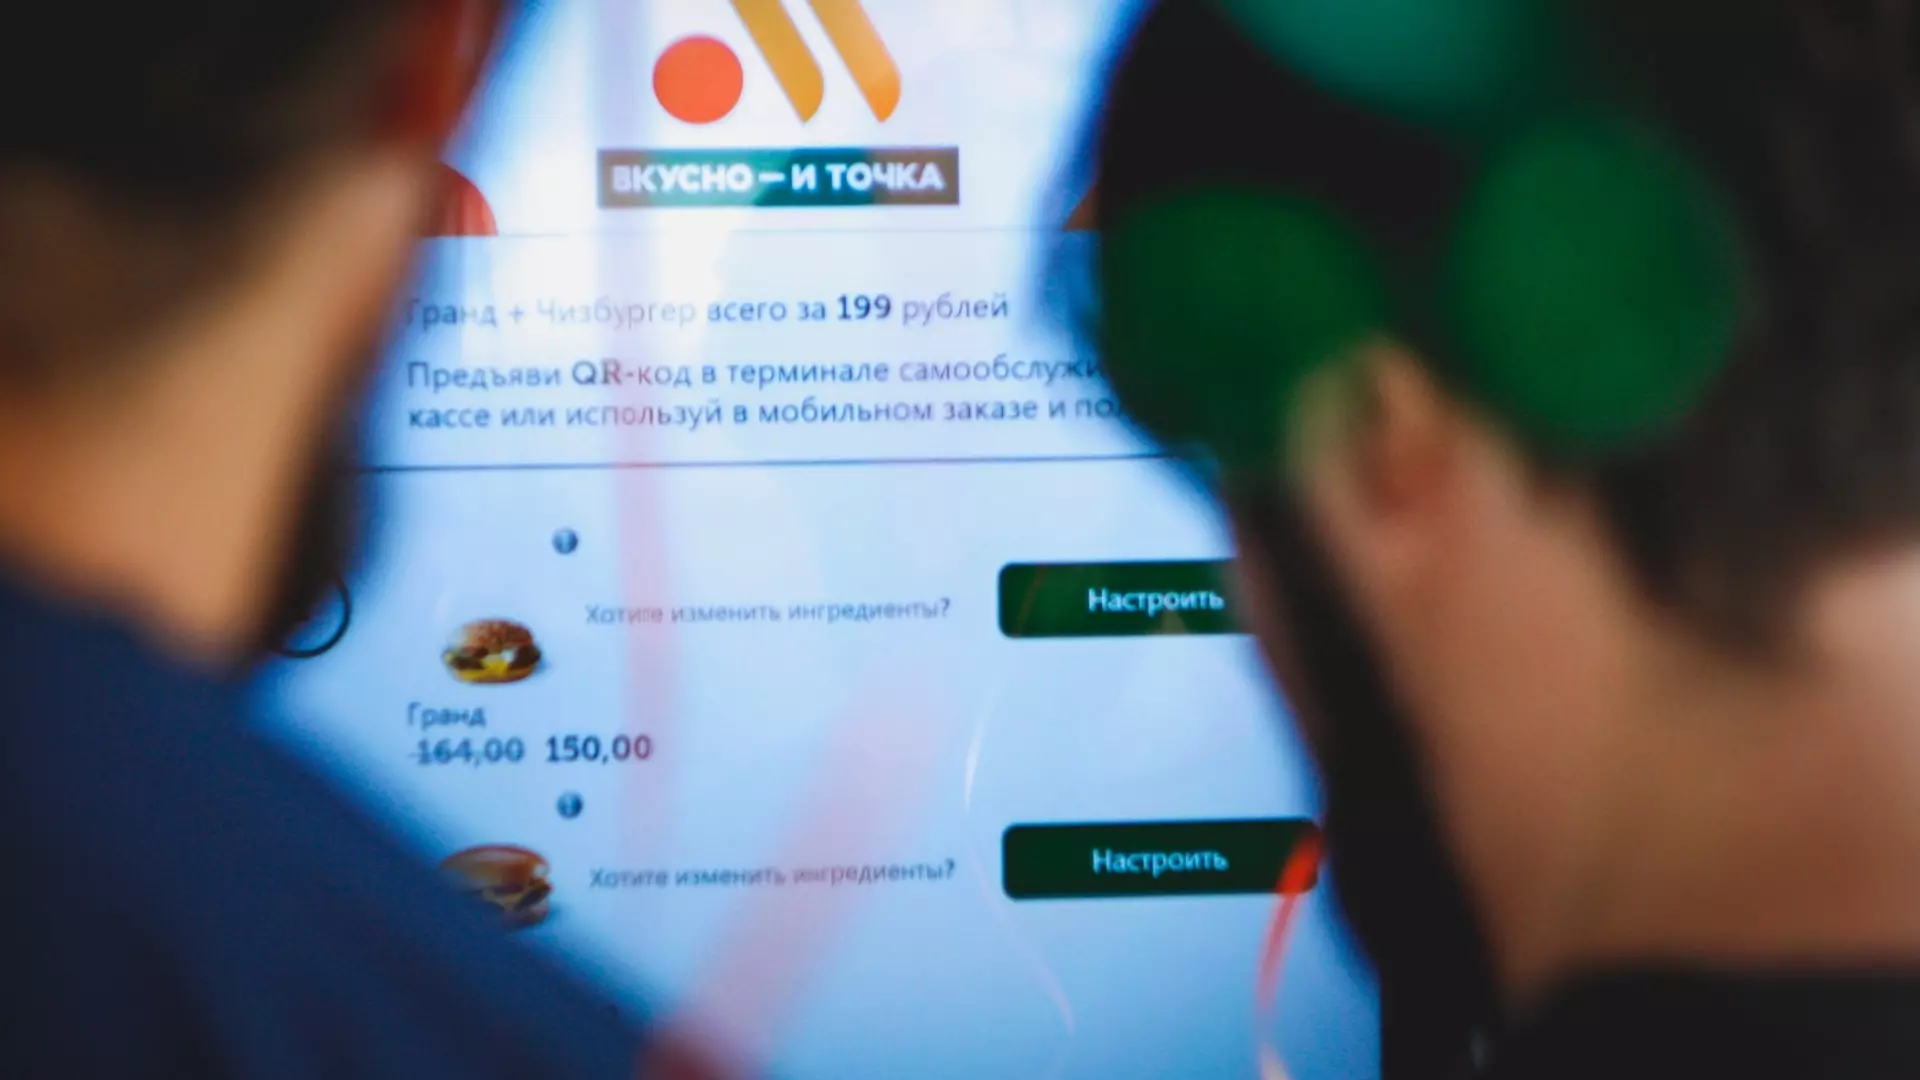 В Тобольске откроют первый ресторан сети «Вкусно — и точка»